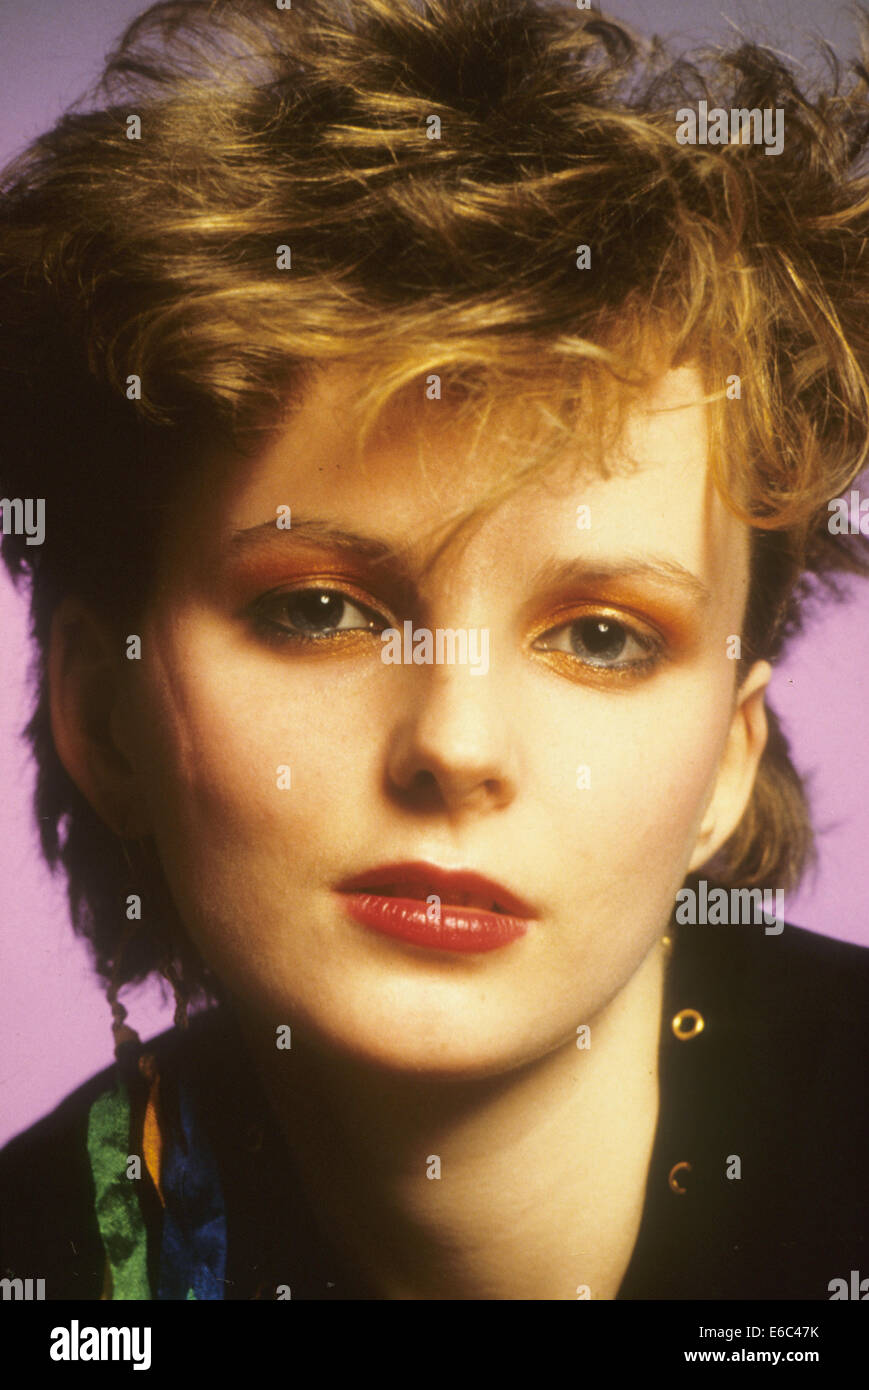 Las imágenes alteradas foto promocional de la cantante Claire Grogan sobre 1982 Foto de stock